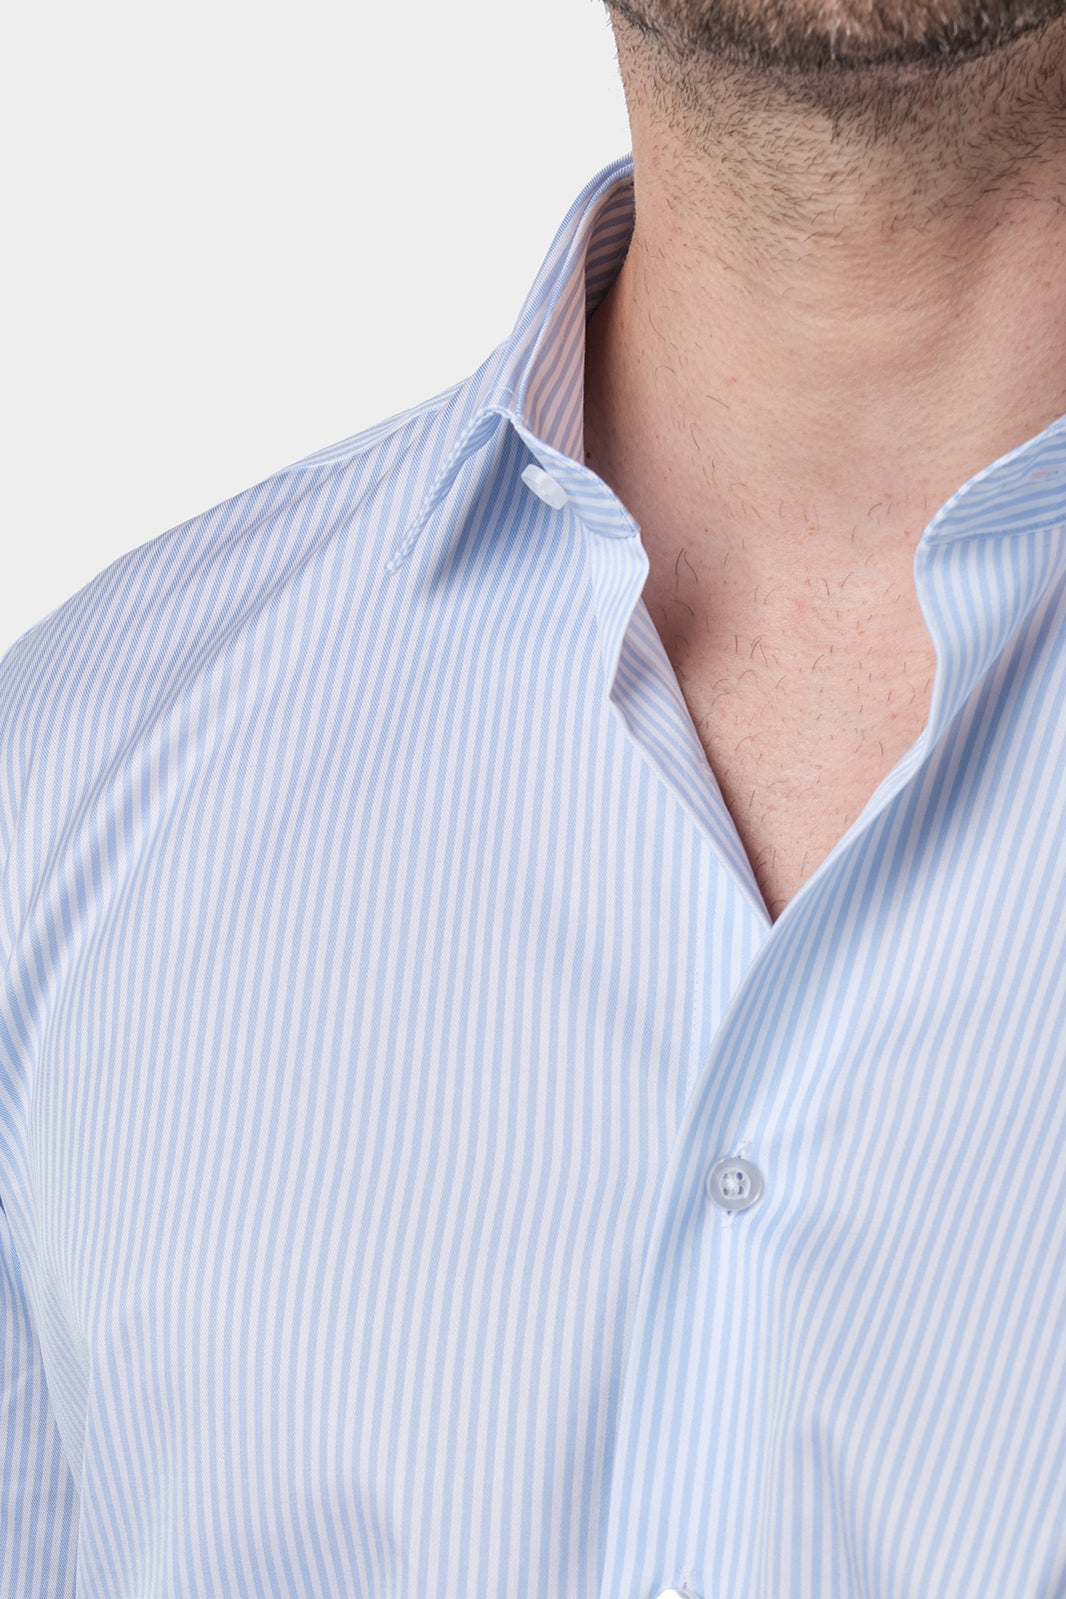 chemise_col_francais_fine_rayure_bleu_ciel_et_blanc_en_coton_3.jpg